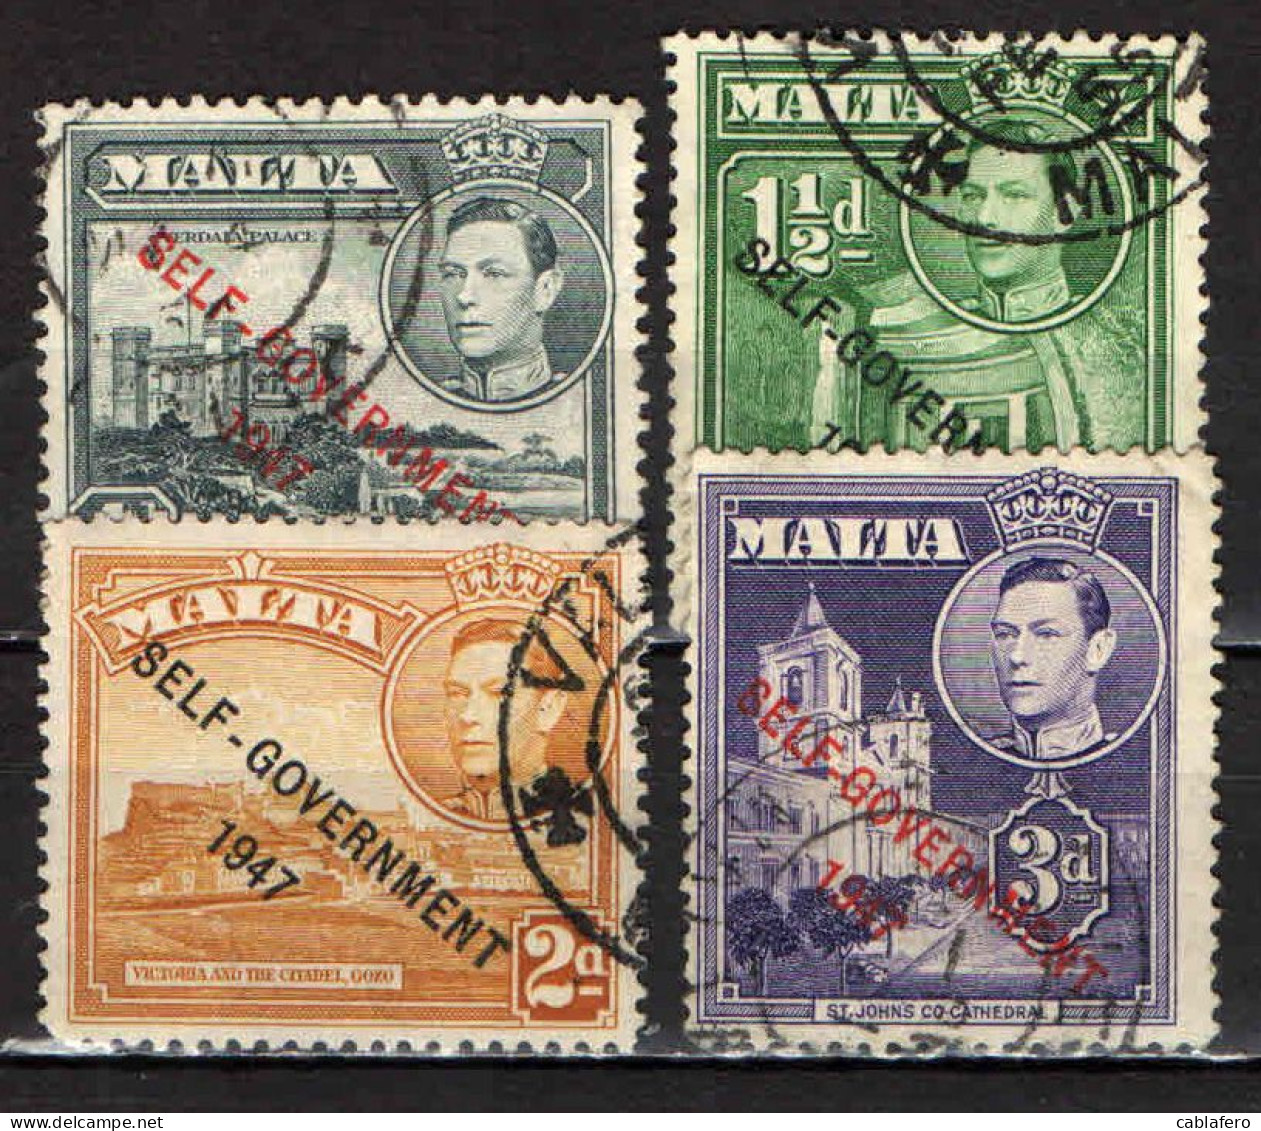 MALTA - 1953 - EFFIGIE DEL RE GIORGIO VI E VISTE DI MALTA - SOVRASTAMPATI "SELF GOVERNMENT 1947" - USATI - Malta (...-1964)